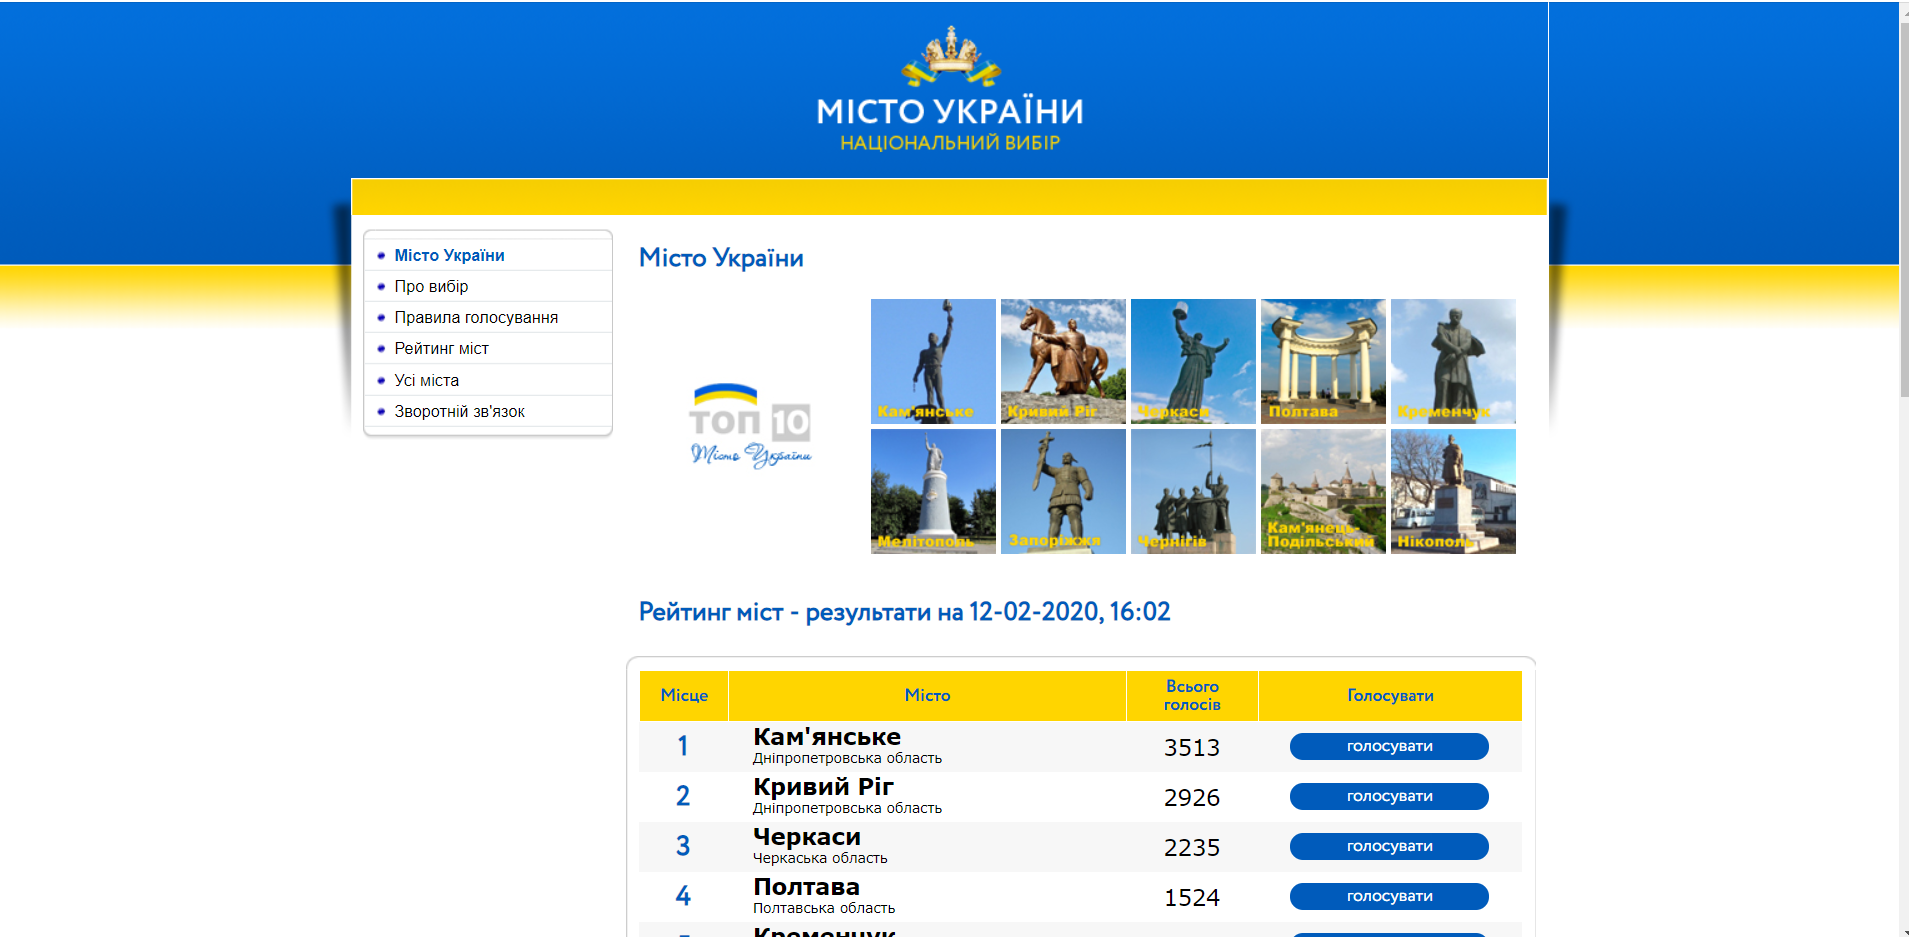 Запорожье попало в провокационный рейтинг украинских городов (ФОТО)